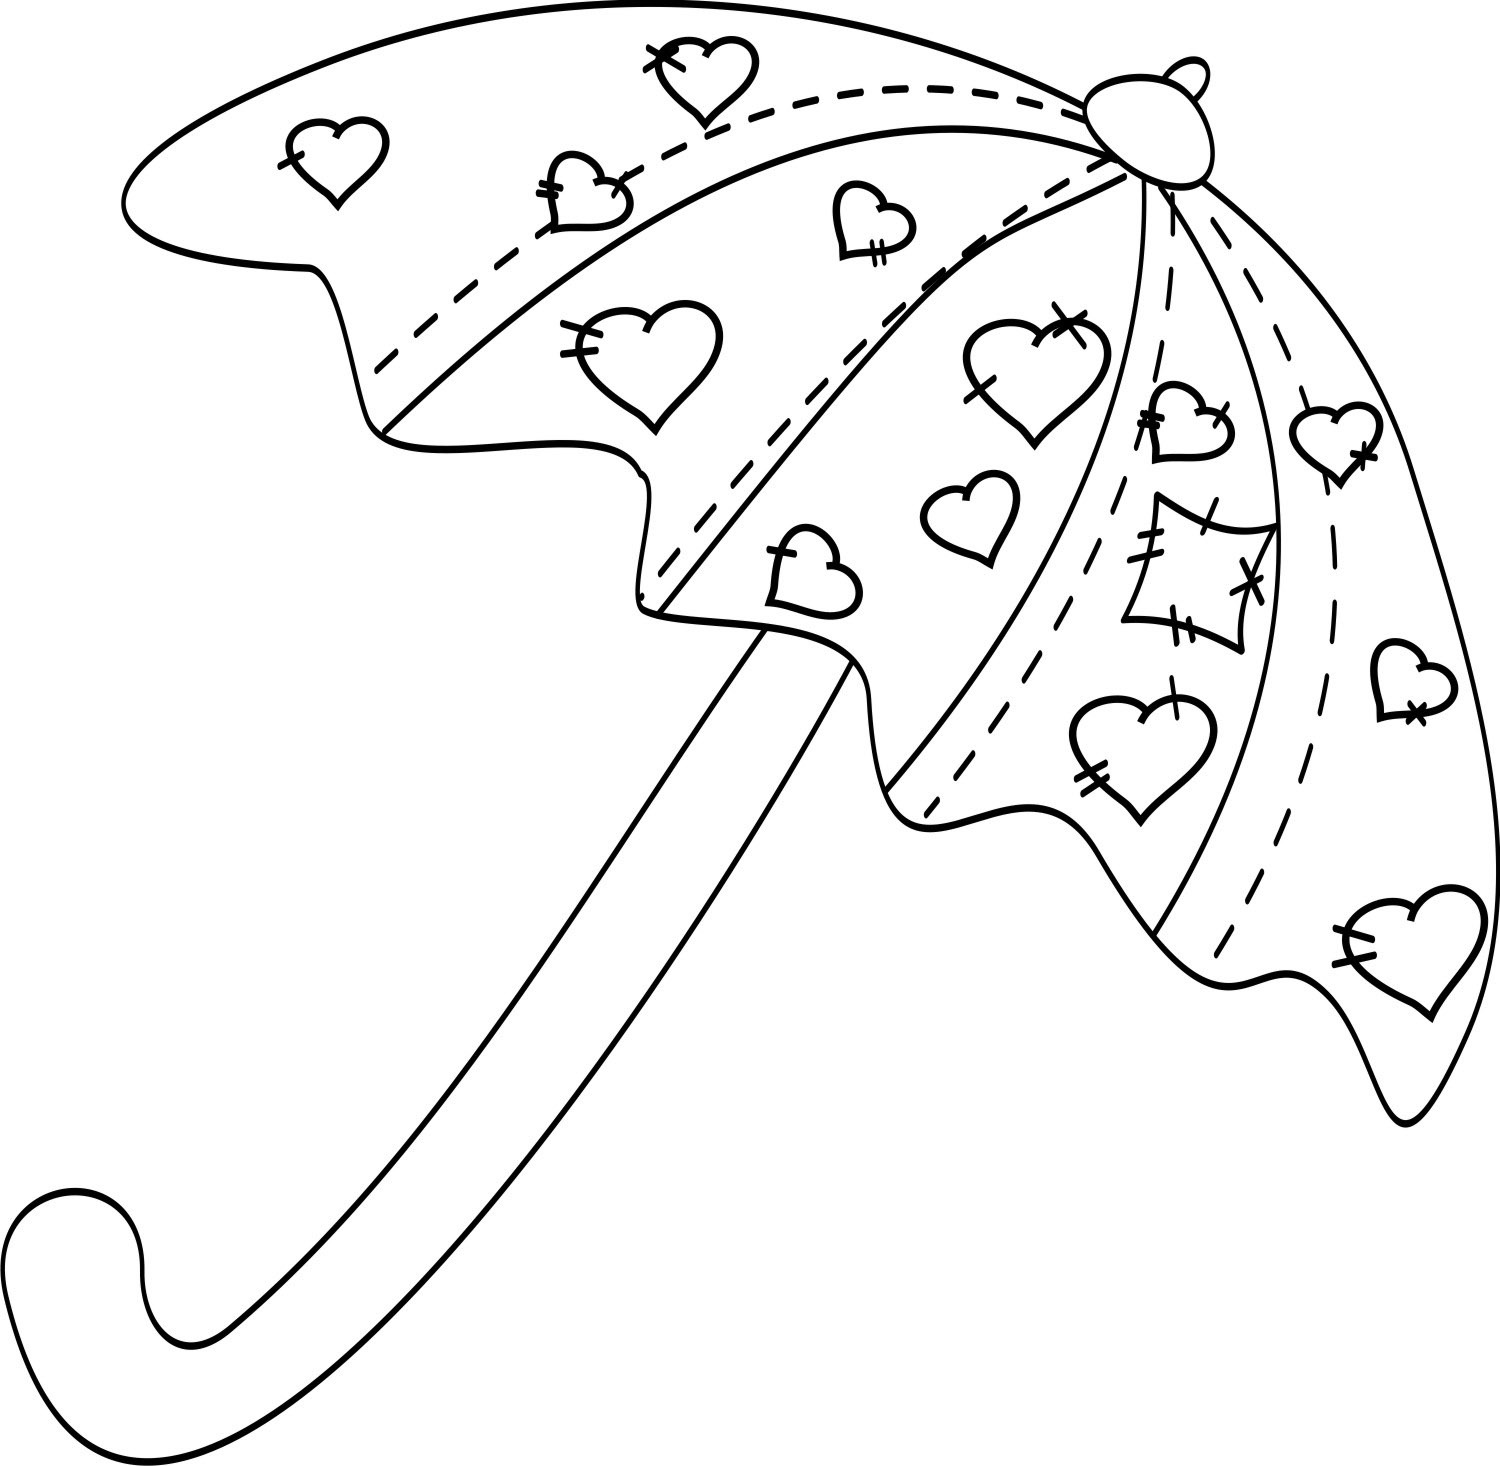 Распечатать зонтик. Раскраска зонтик. Зонтик раскраска для детей. Зонтик раскраска для малышей. Зонт раскраска для детей.